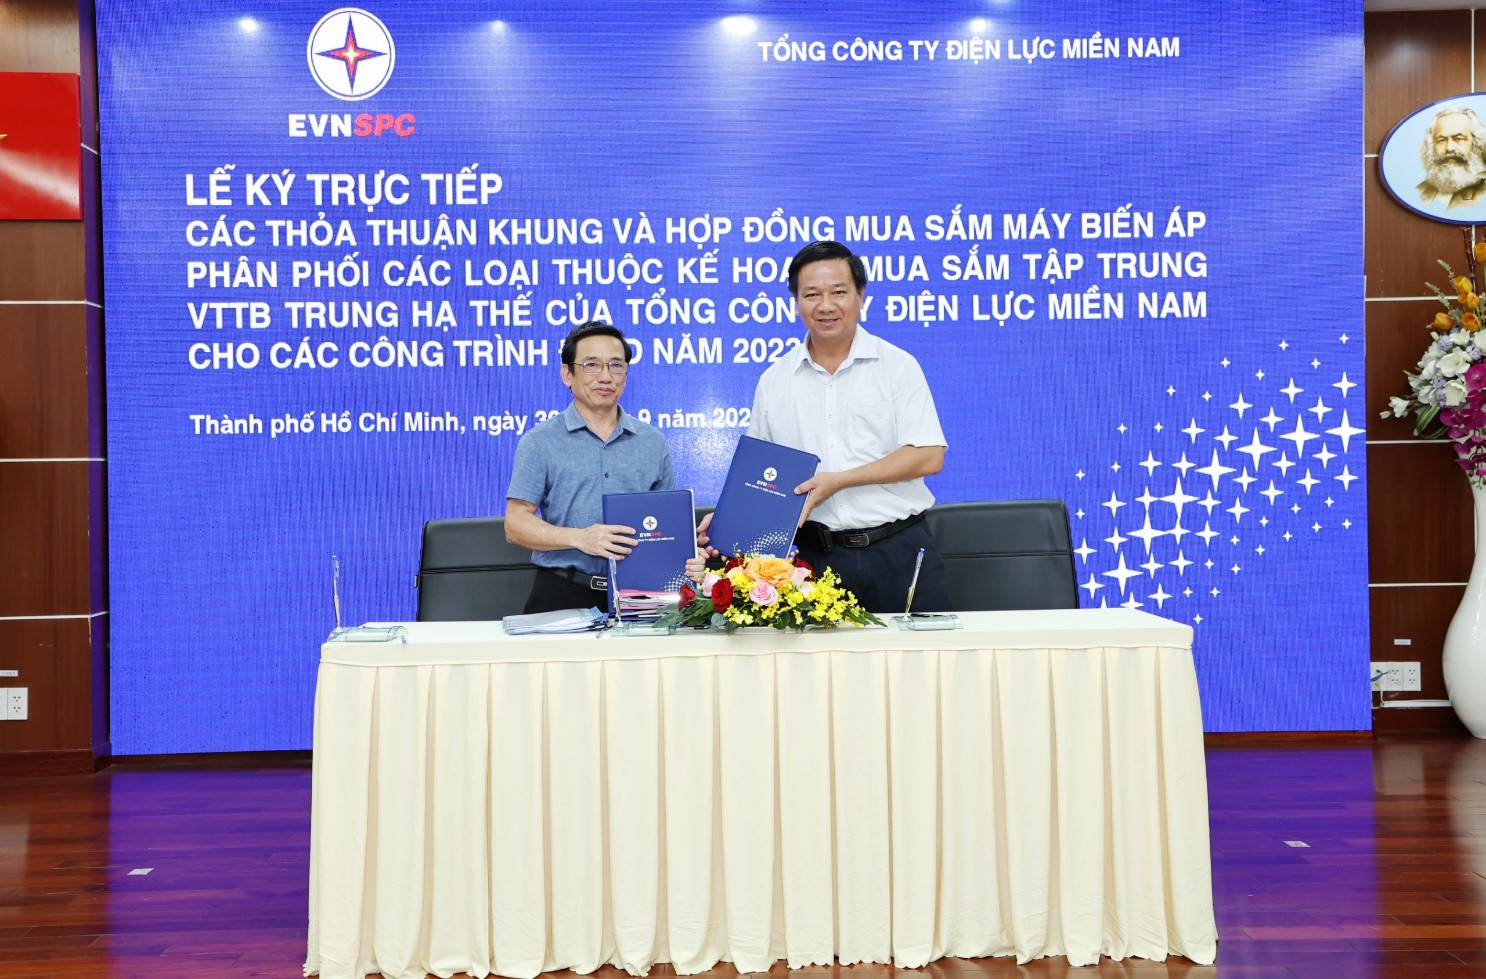 Ông Lê Hoàng Oanh – Giám đốc Công ty Điện lực Long An (áo trắng) ký hợp đồng với Công ty Cổ phần Chế tạo Thiết bị Điện Việt Nam (Havec) cho Gói thầu số 1 - Máy biến áp phân phối 1 pha (25kVA – 37,5 kVA). Ảnh: EVNSPC